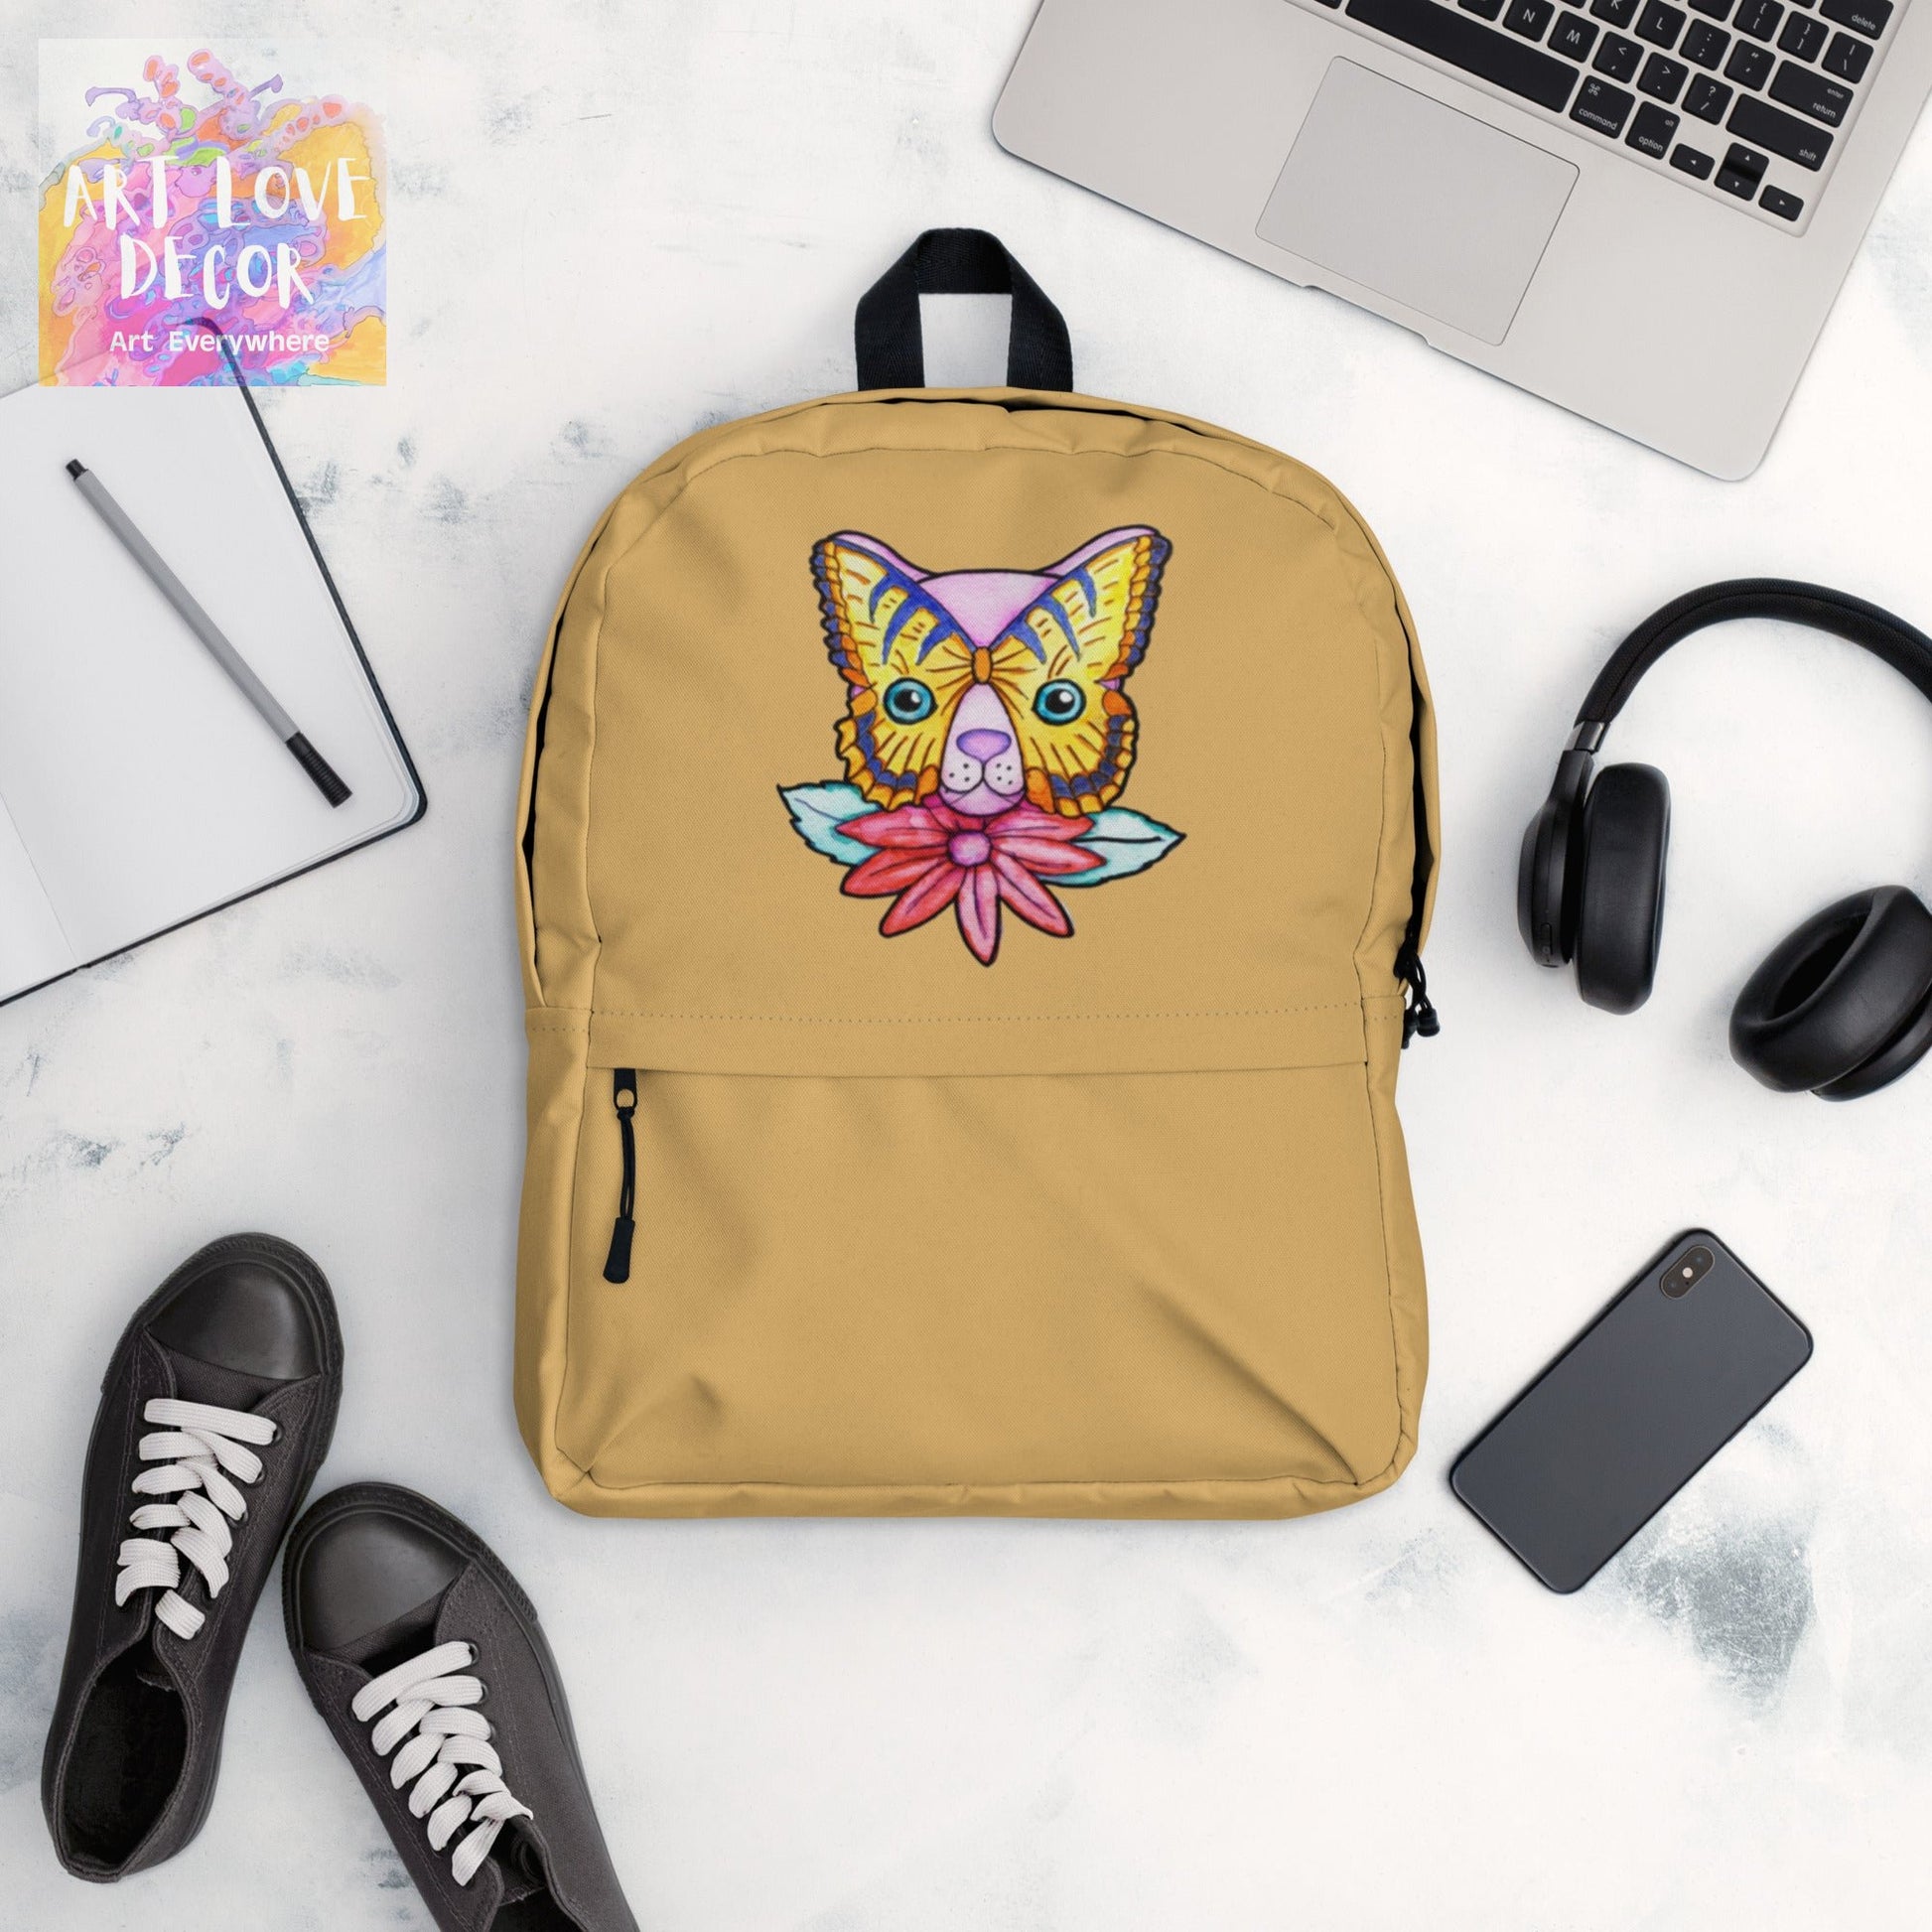 Kitty Cat Flower Backpack - Art Love Decor